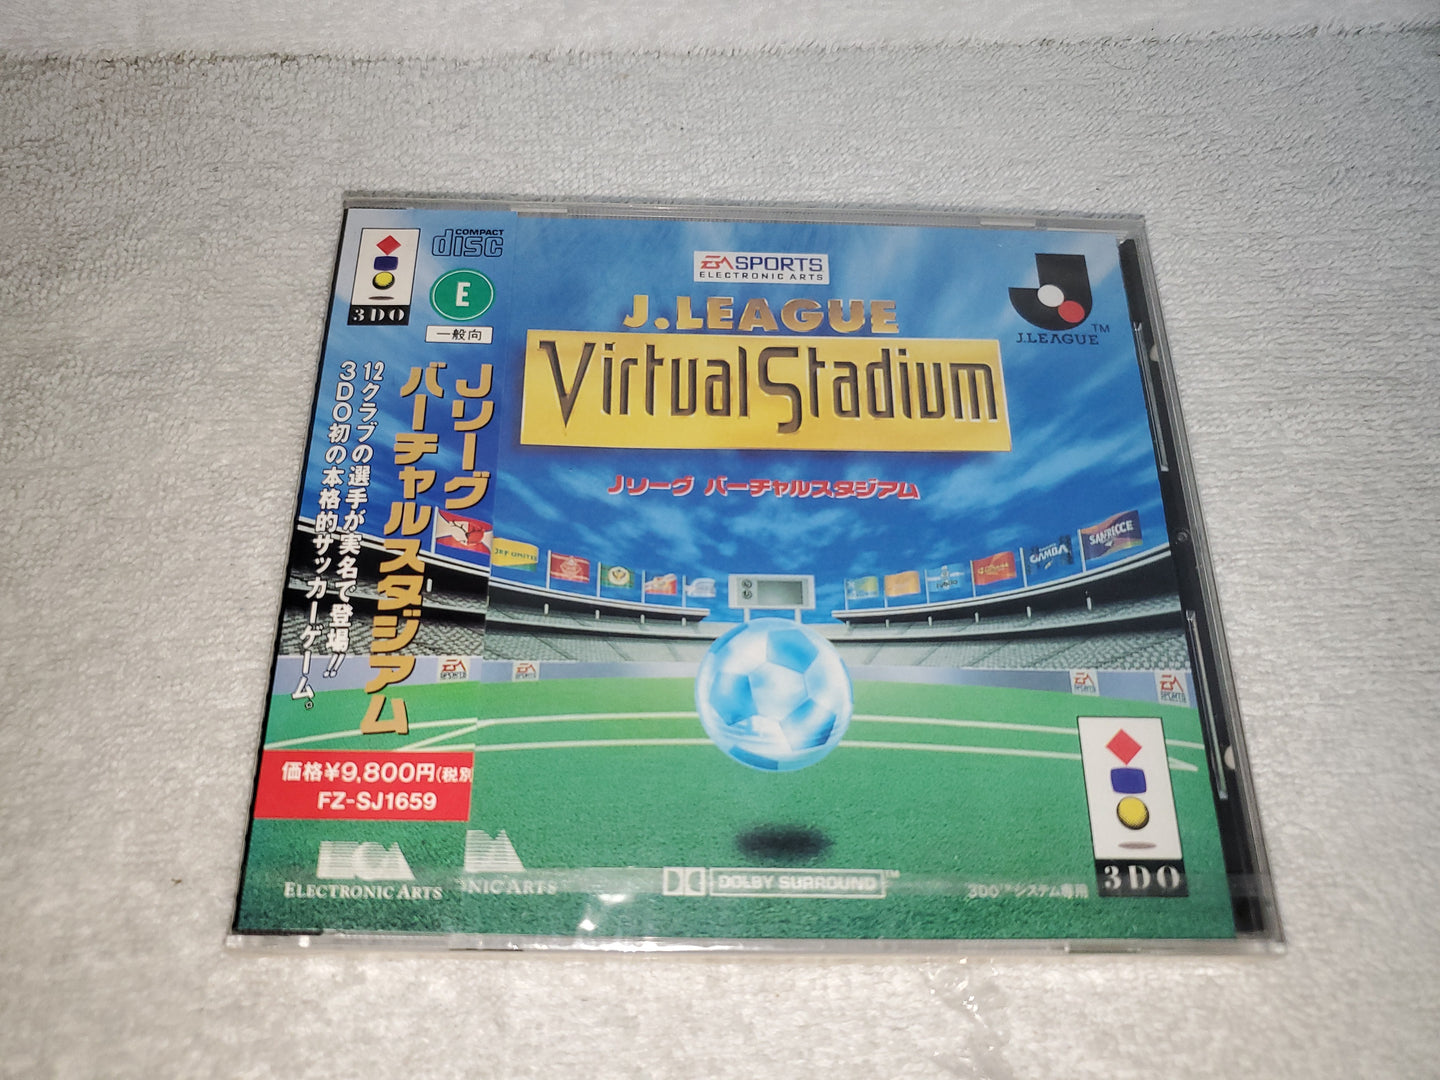 J League Virtual Stadium

- panasonic 3do japan